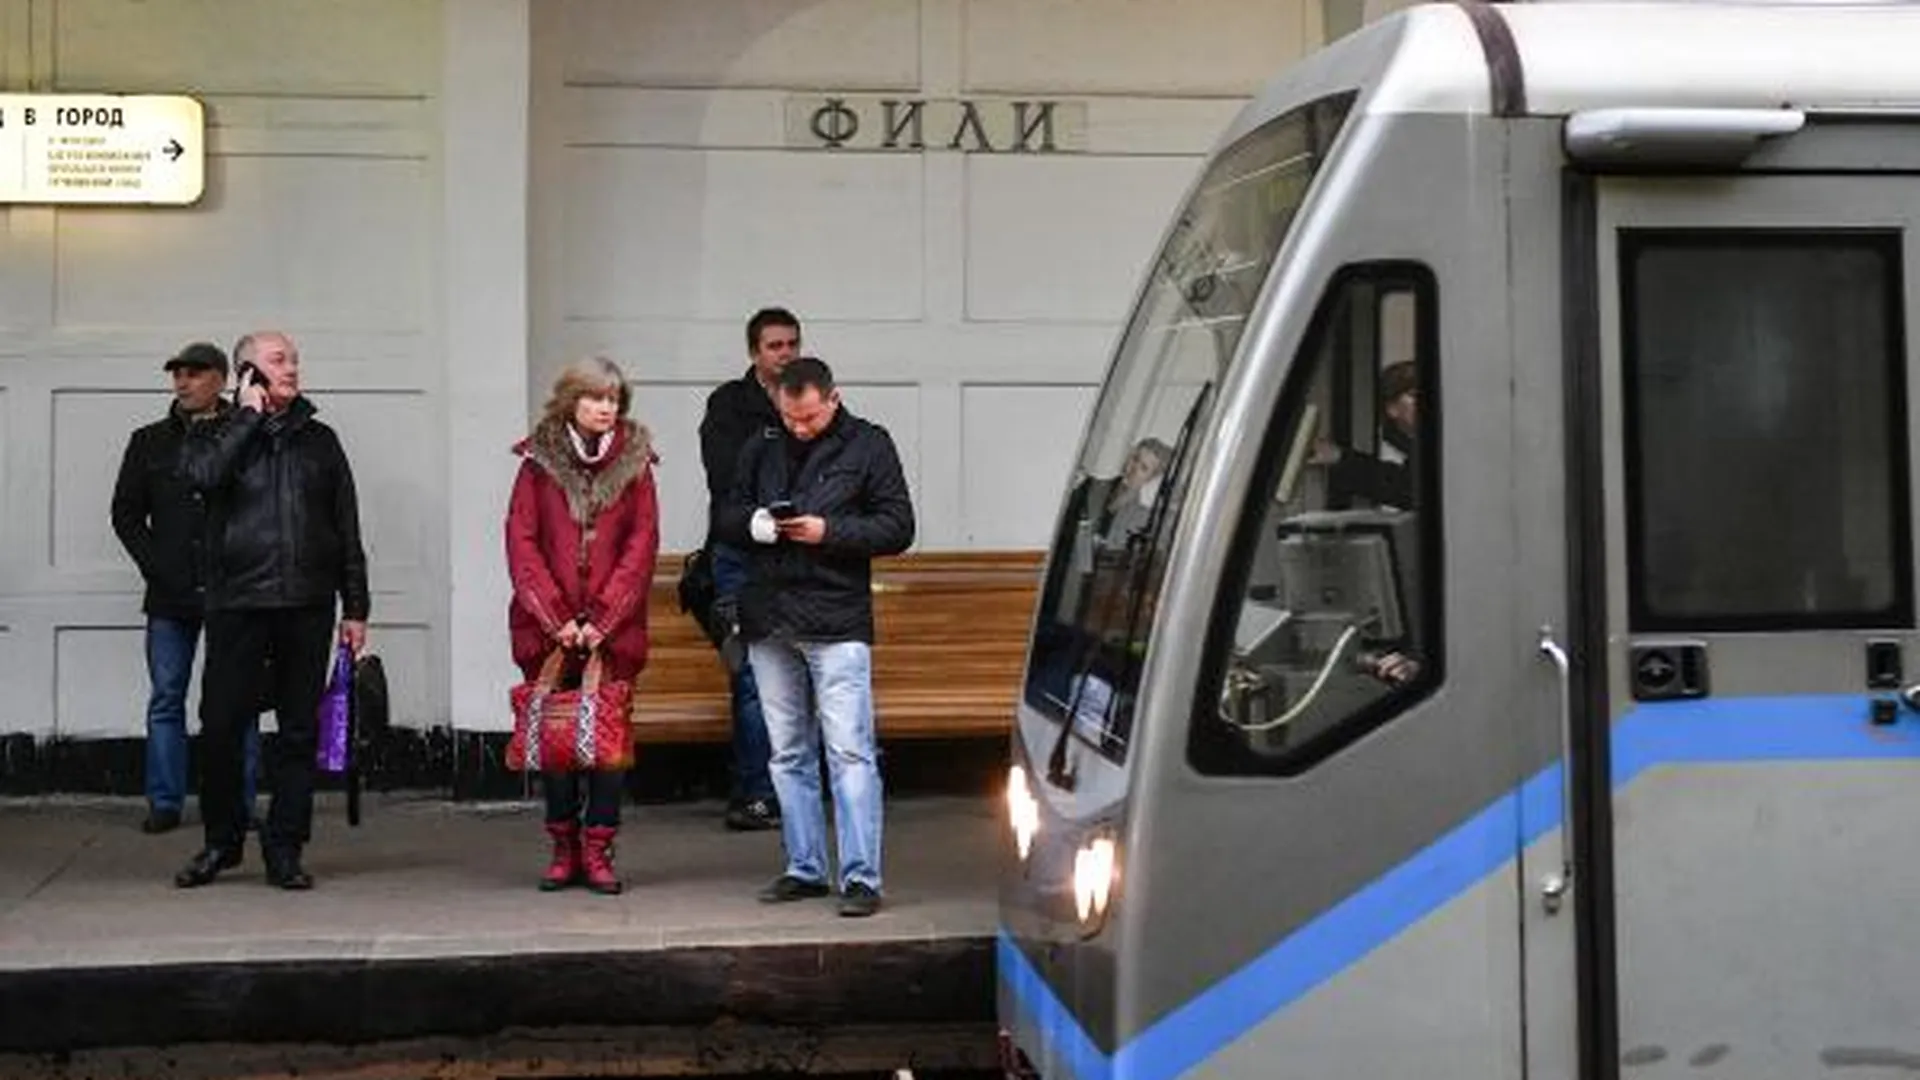 Западный вестибюль станции «Фили» метро Москвы могут открыть после ремонта в марте 2017 г